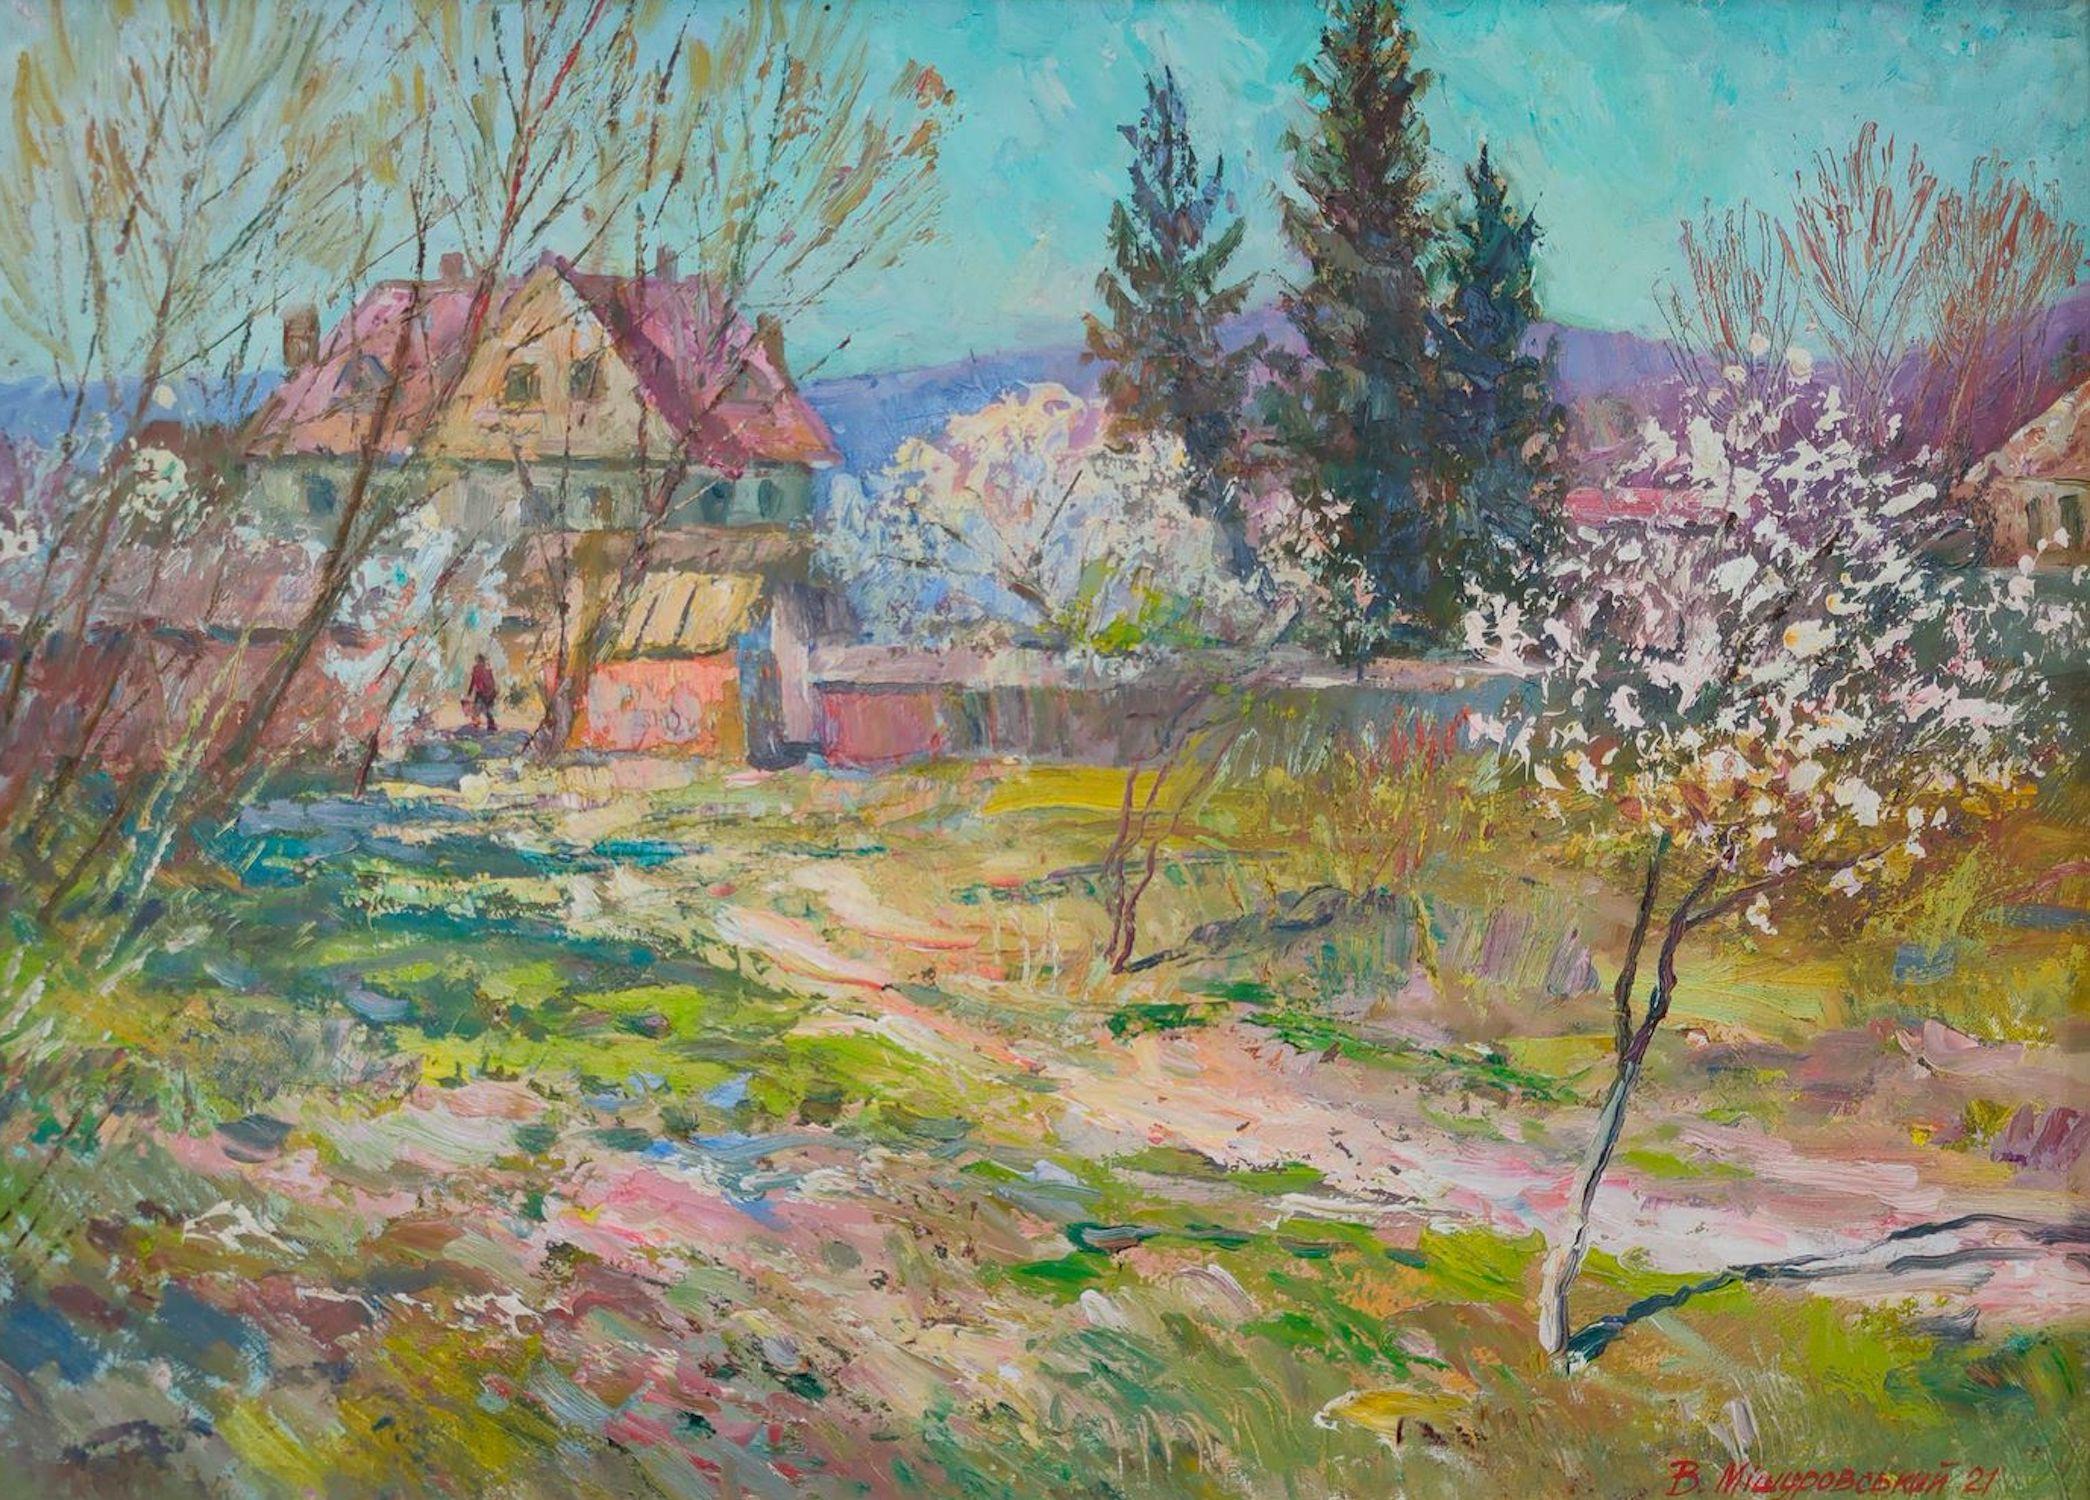 Mishurovskiy V. Landscape Painting – April in the Village, Original Ölgemälde, fertig zum Hängen, April in the Village